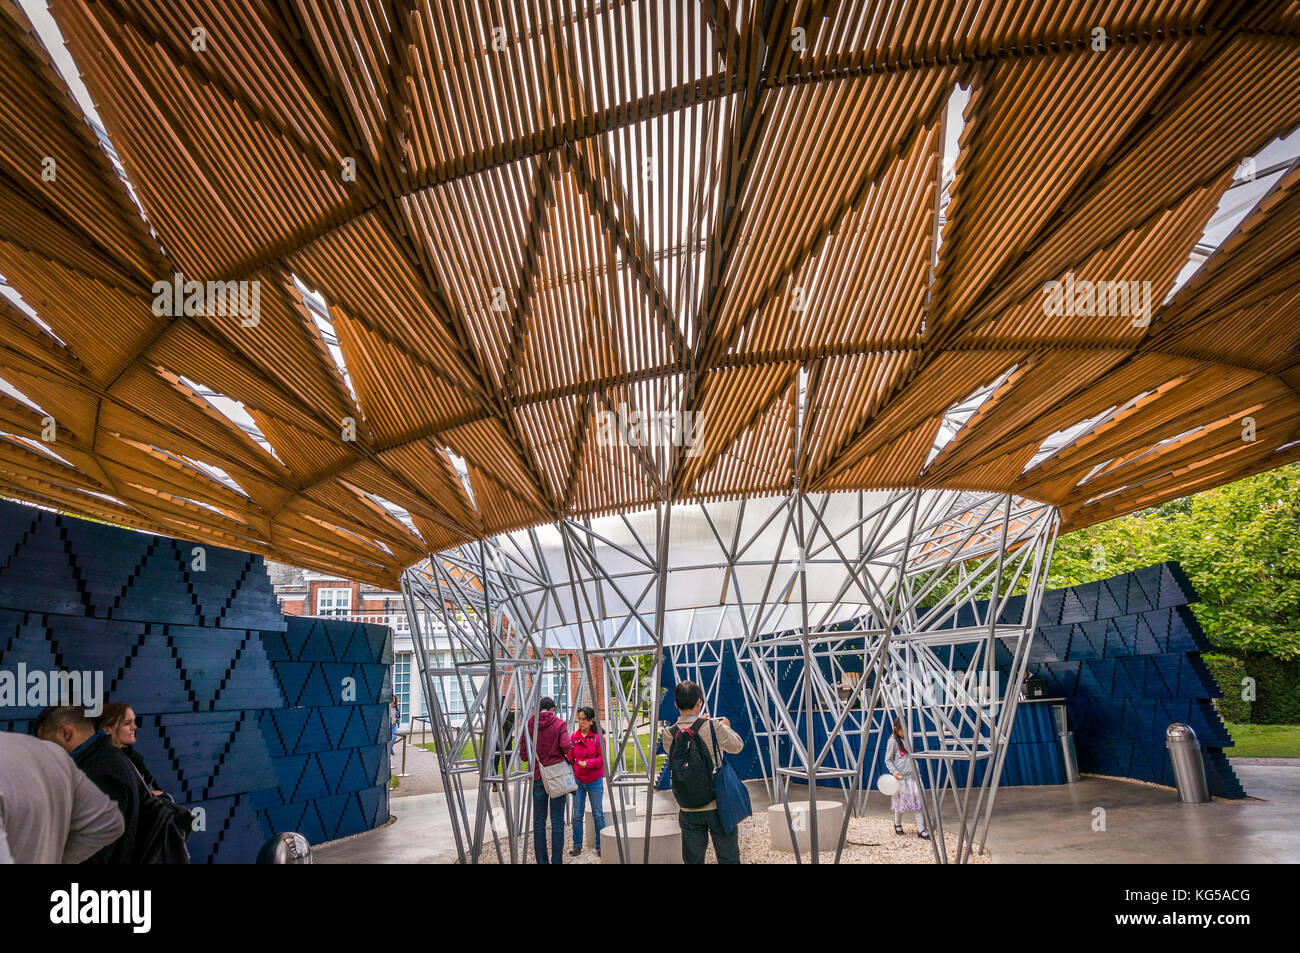 La serpentine Pavilion 2017 conçu par Francis Kéré, Kensington Gardens, London, UK Banque D'Images